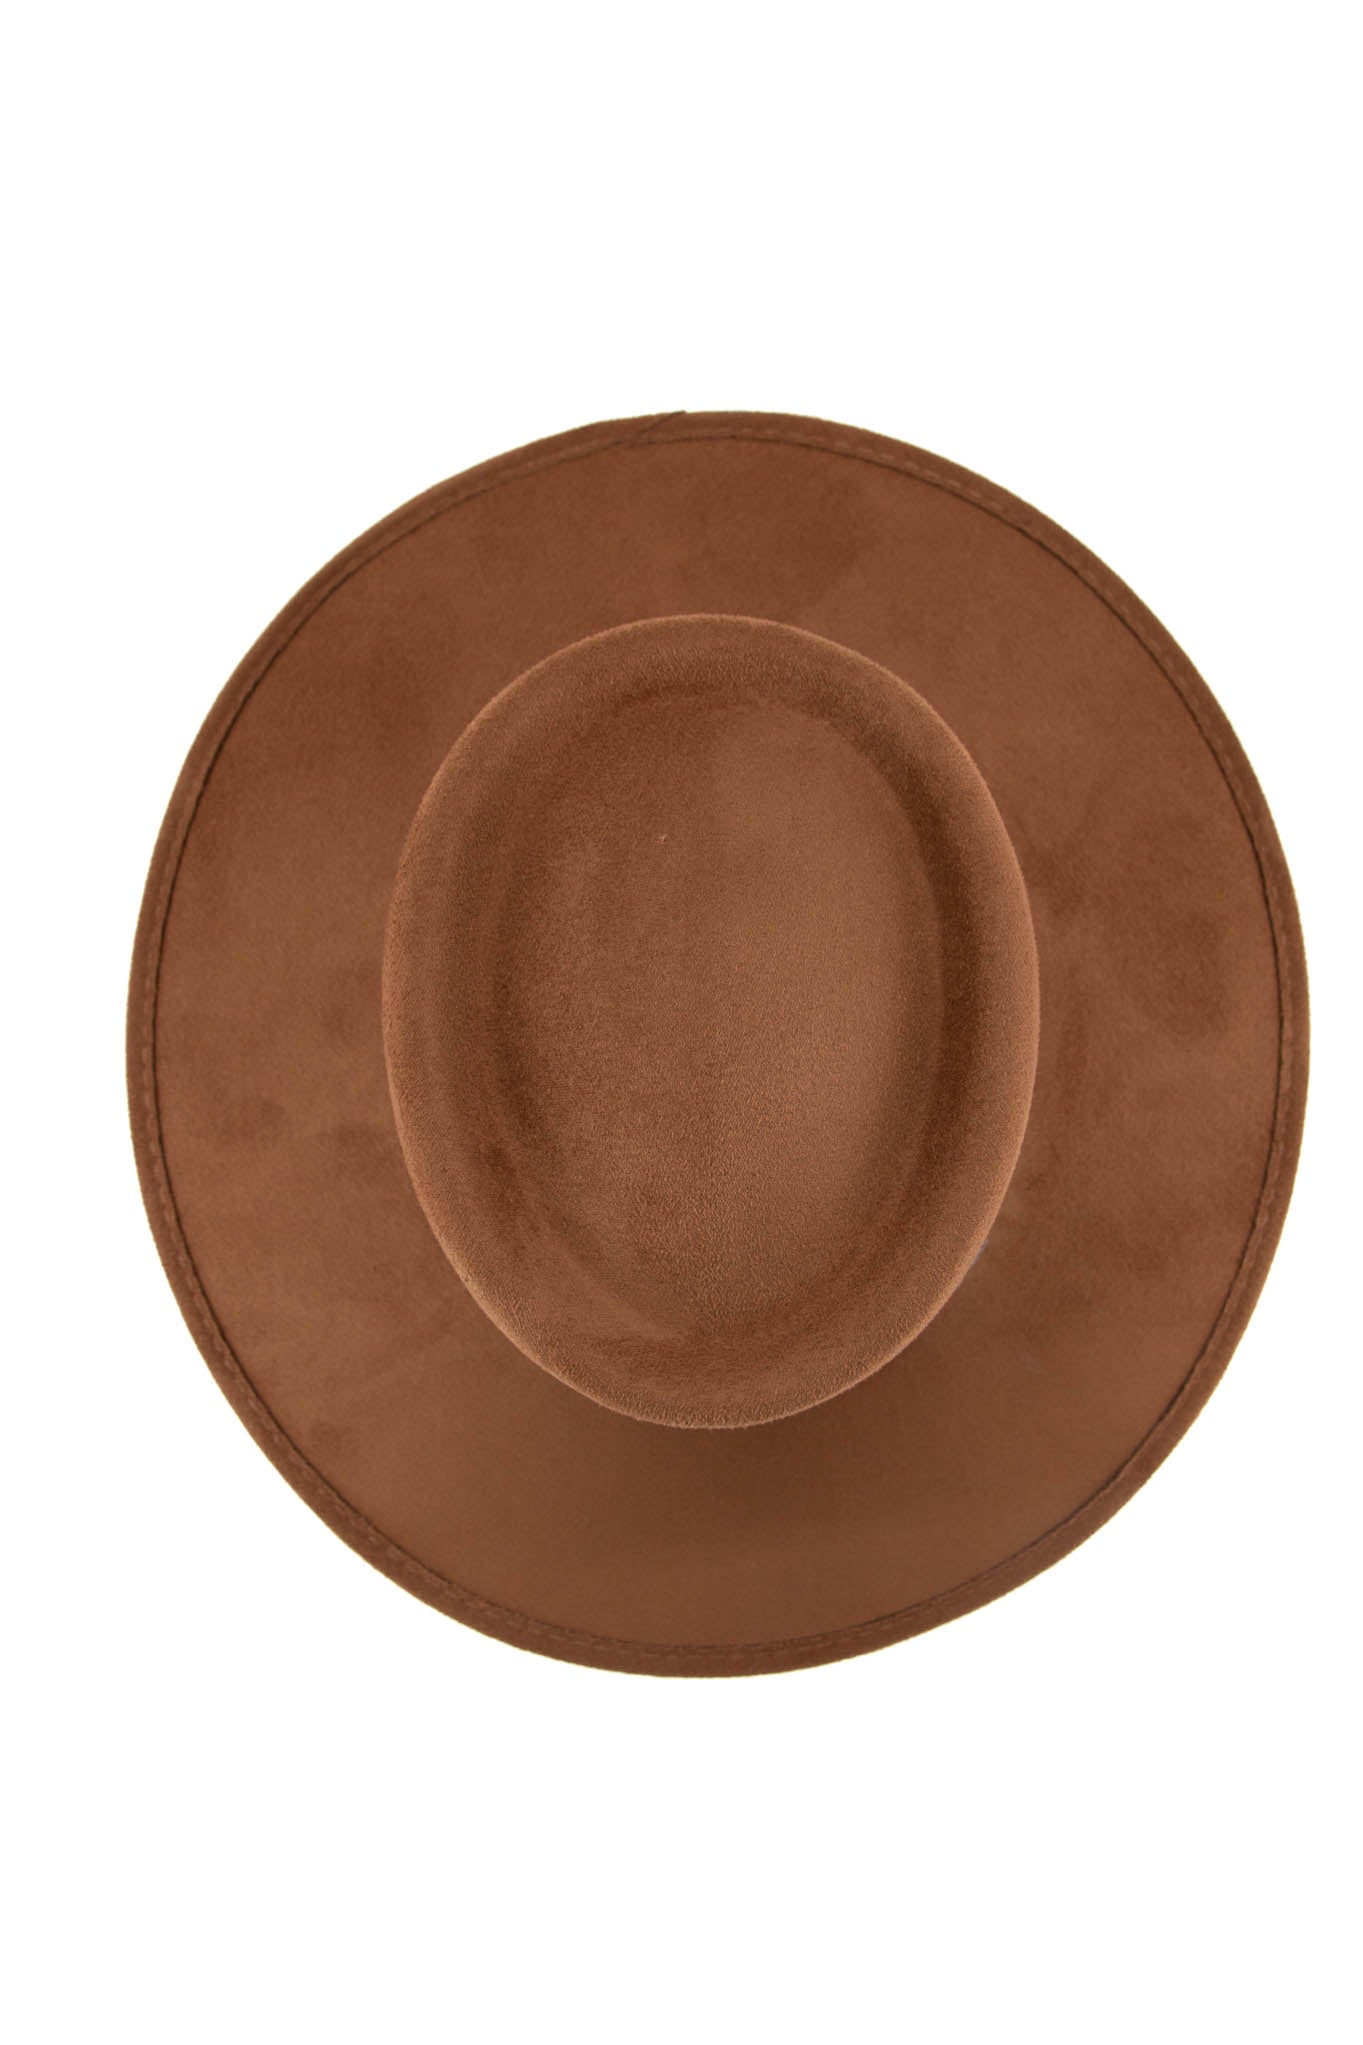 Rock'em Oval Topback Suede Hat